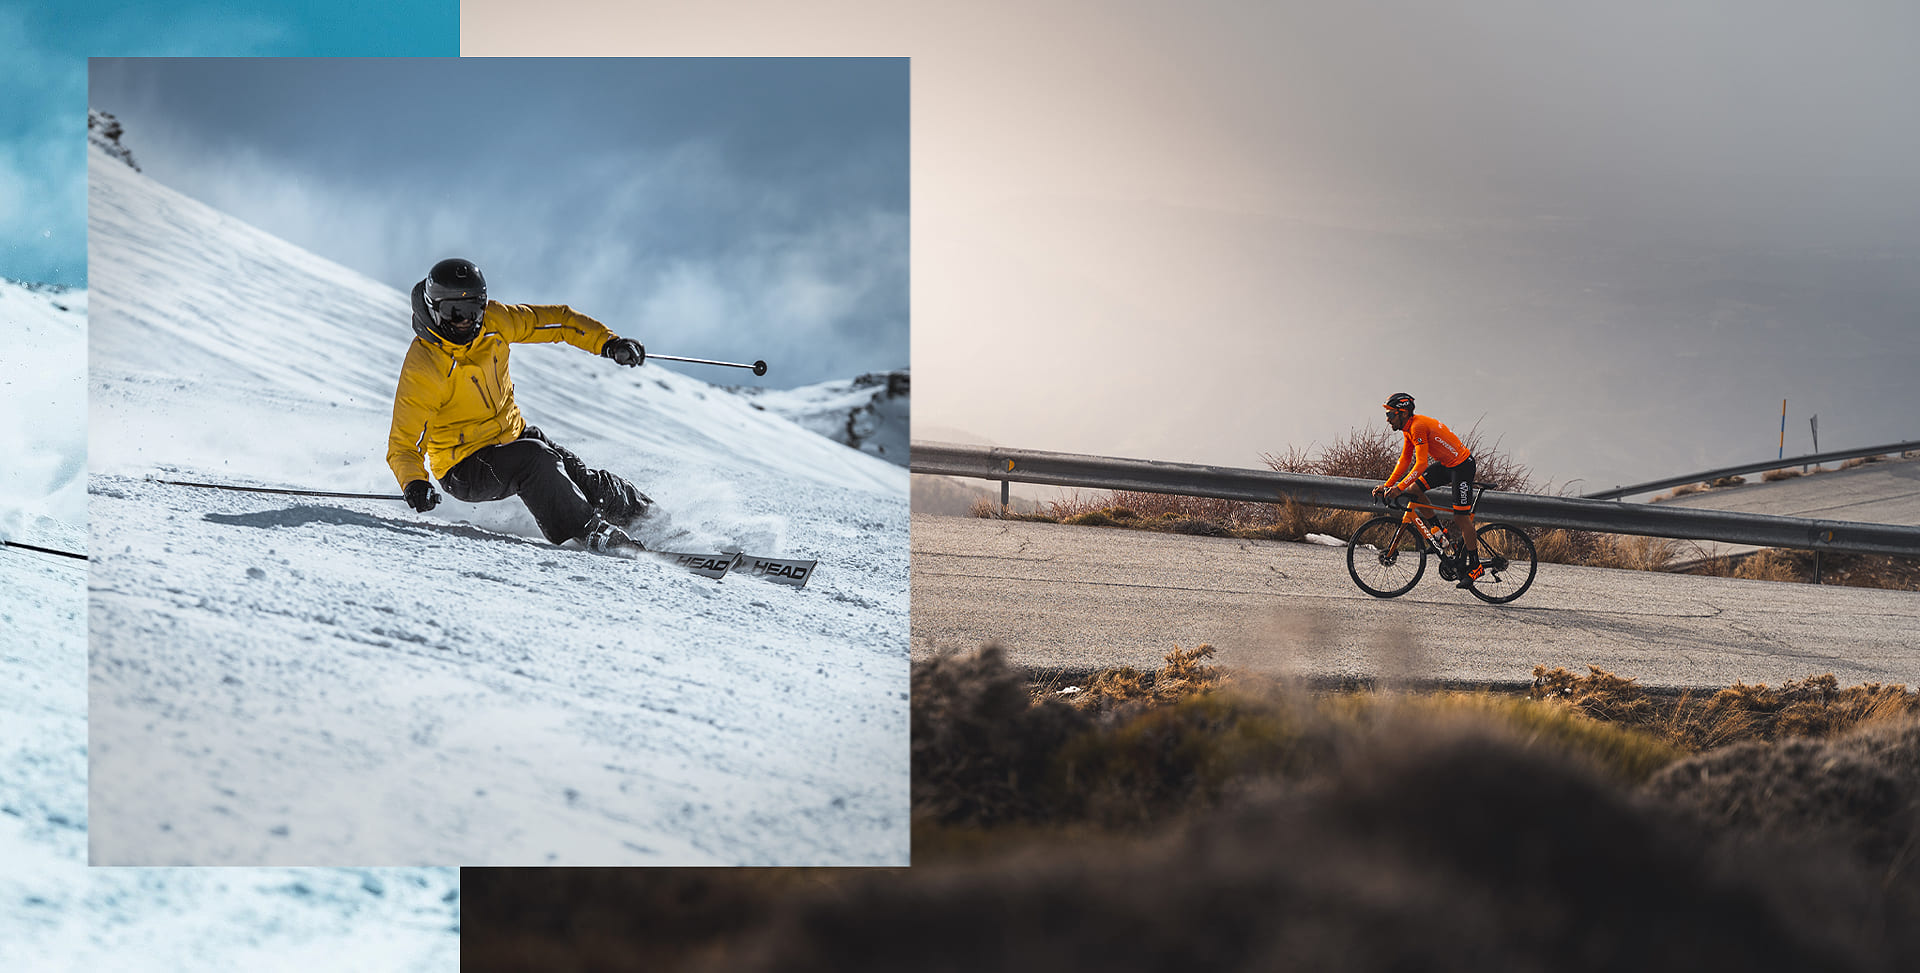 Dos imágenes creativas superpuestas de un esquiador y un ciclista